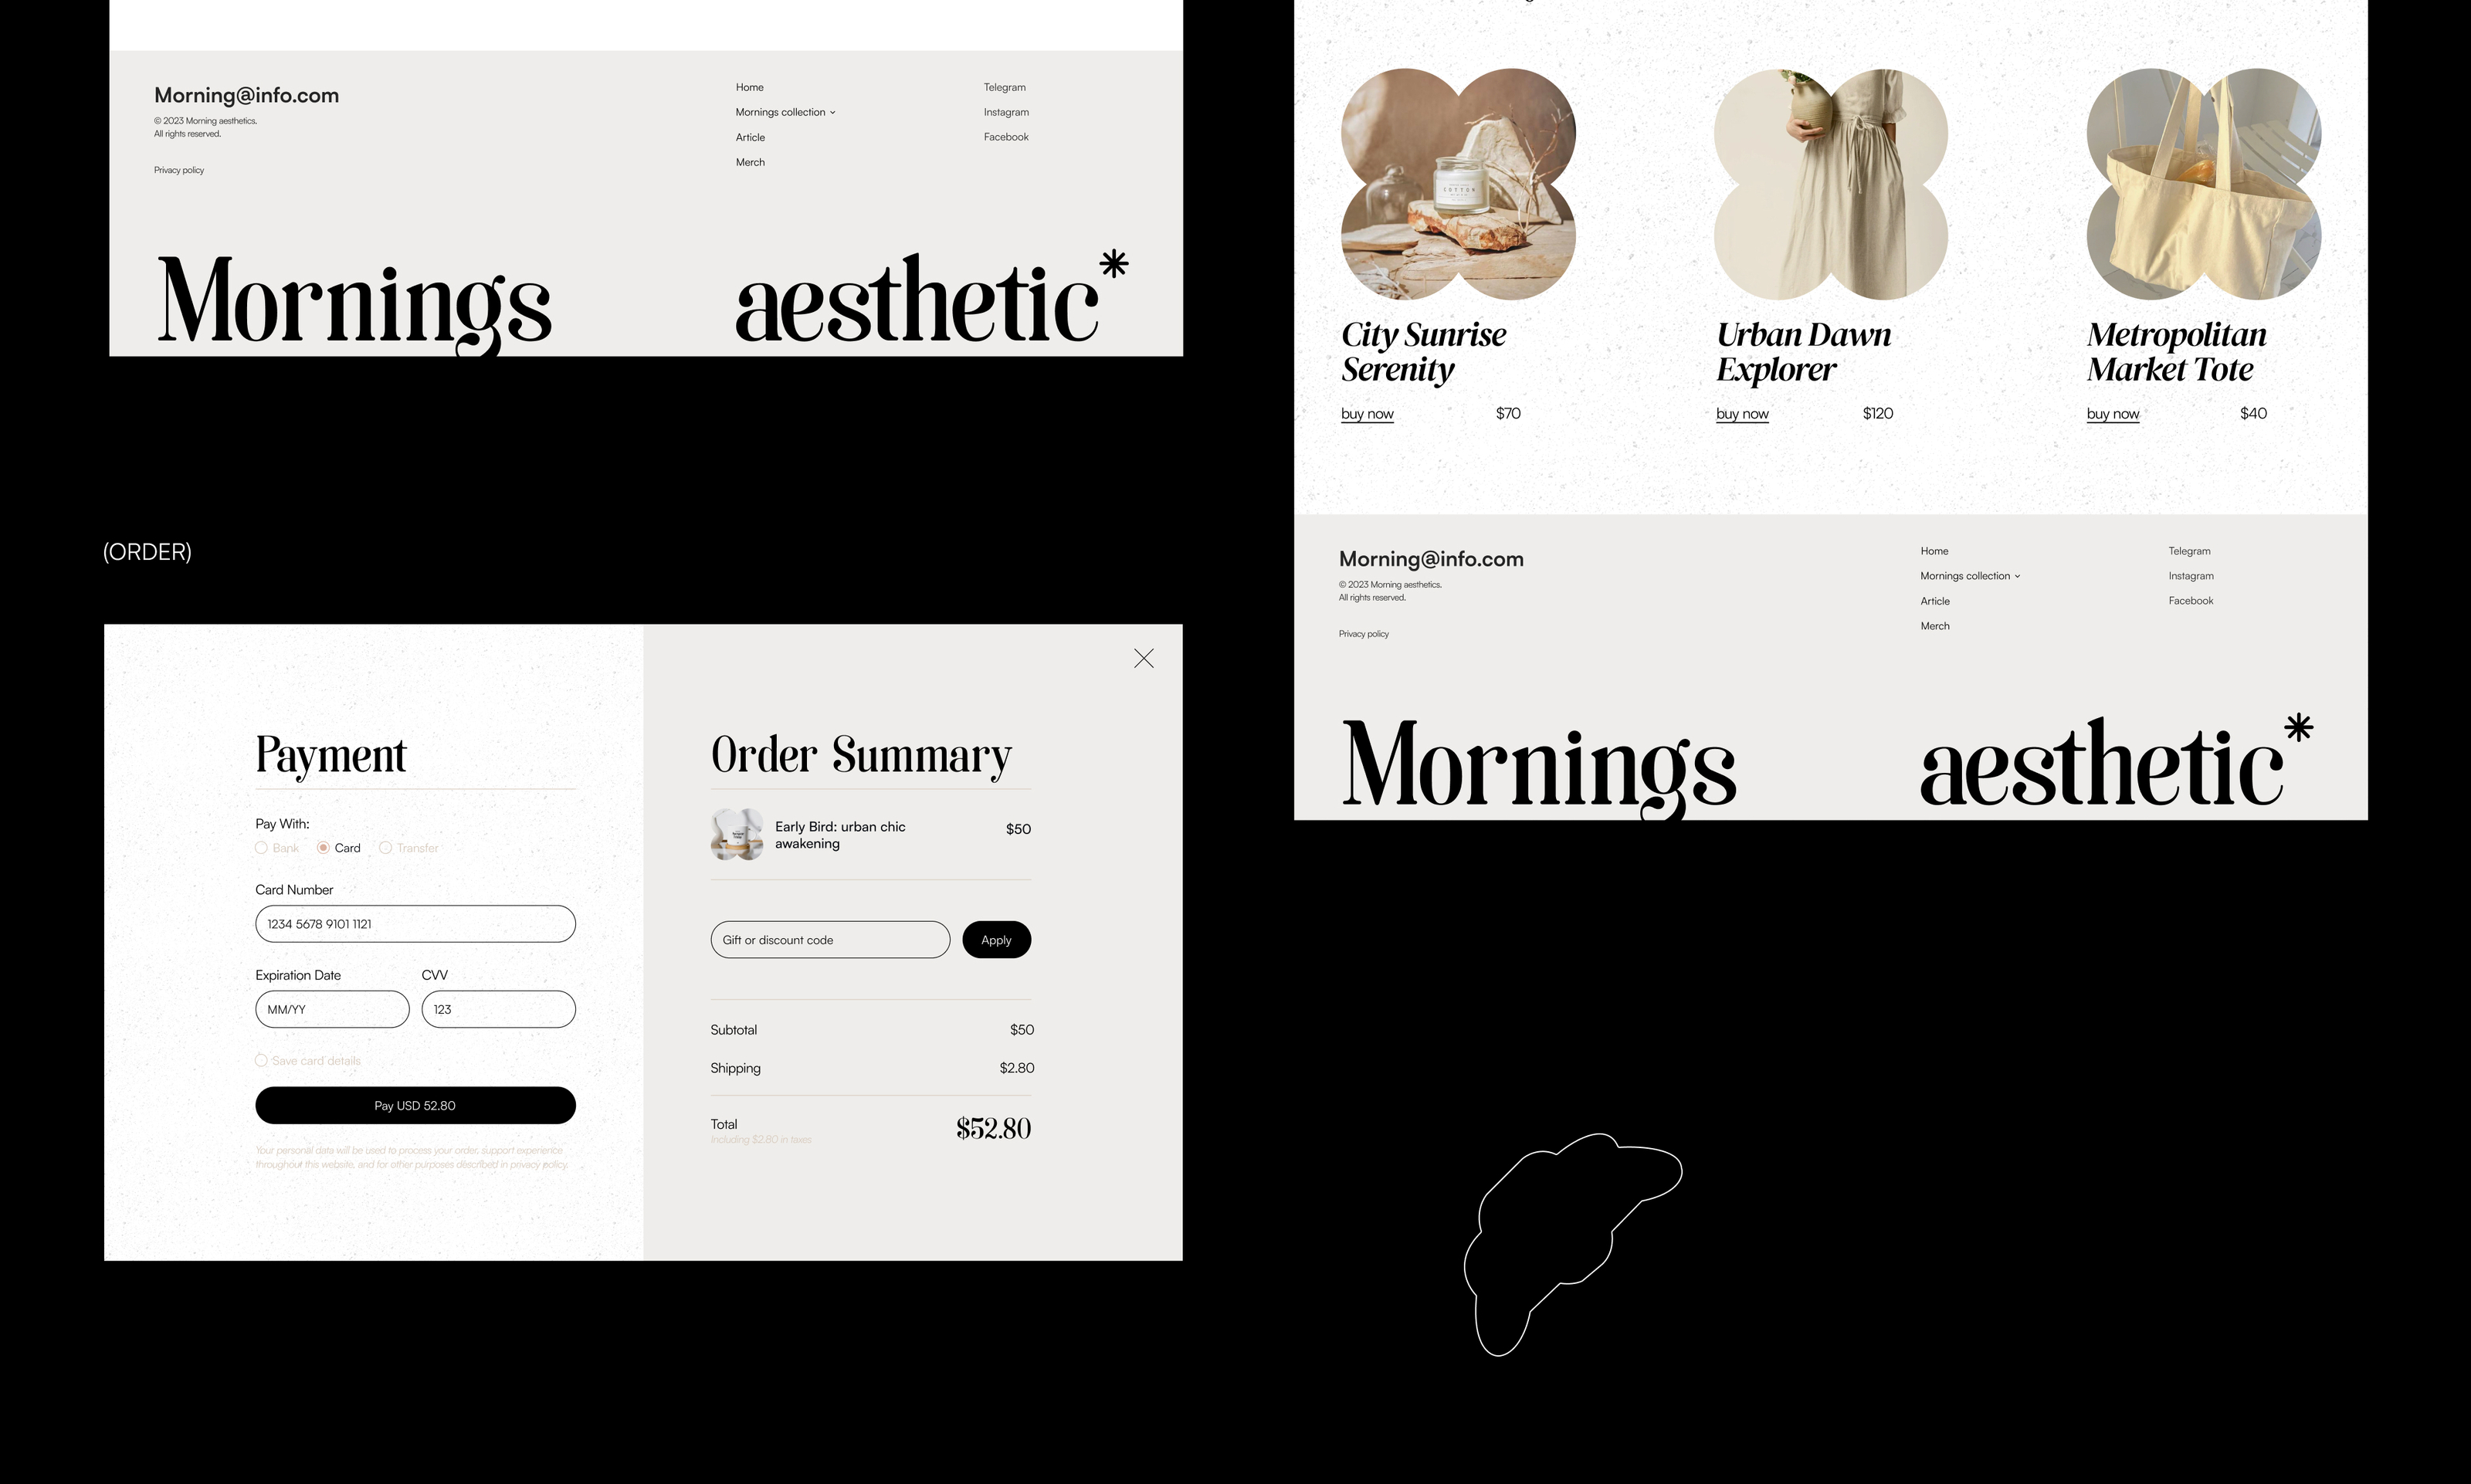 Morning aesthetics website UX/UI DESIGN — Изображение №18 — Интерфейсы, Анимация на Dprofile